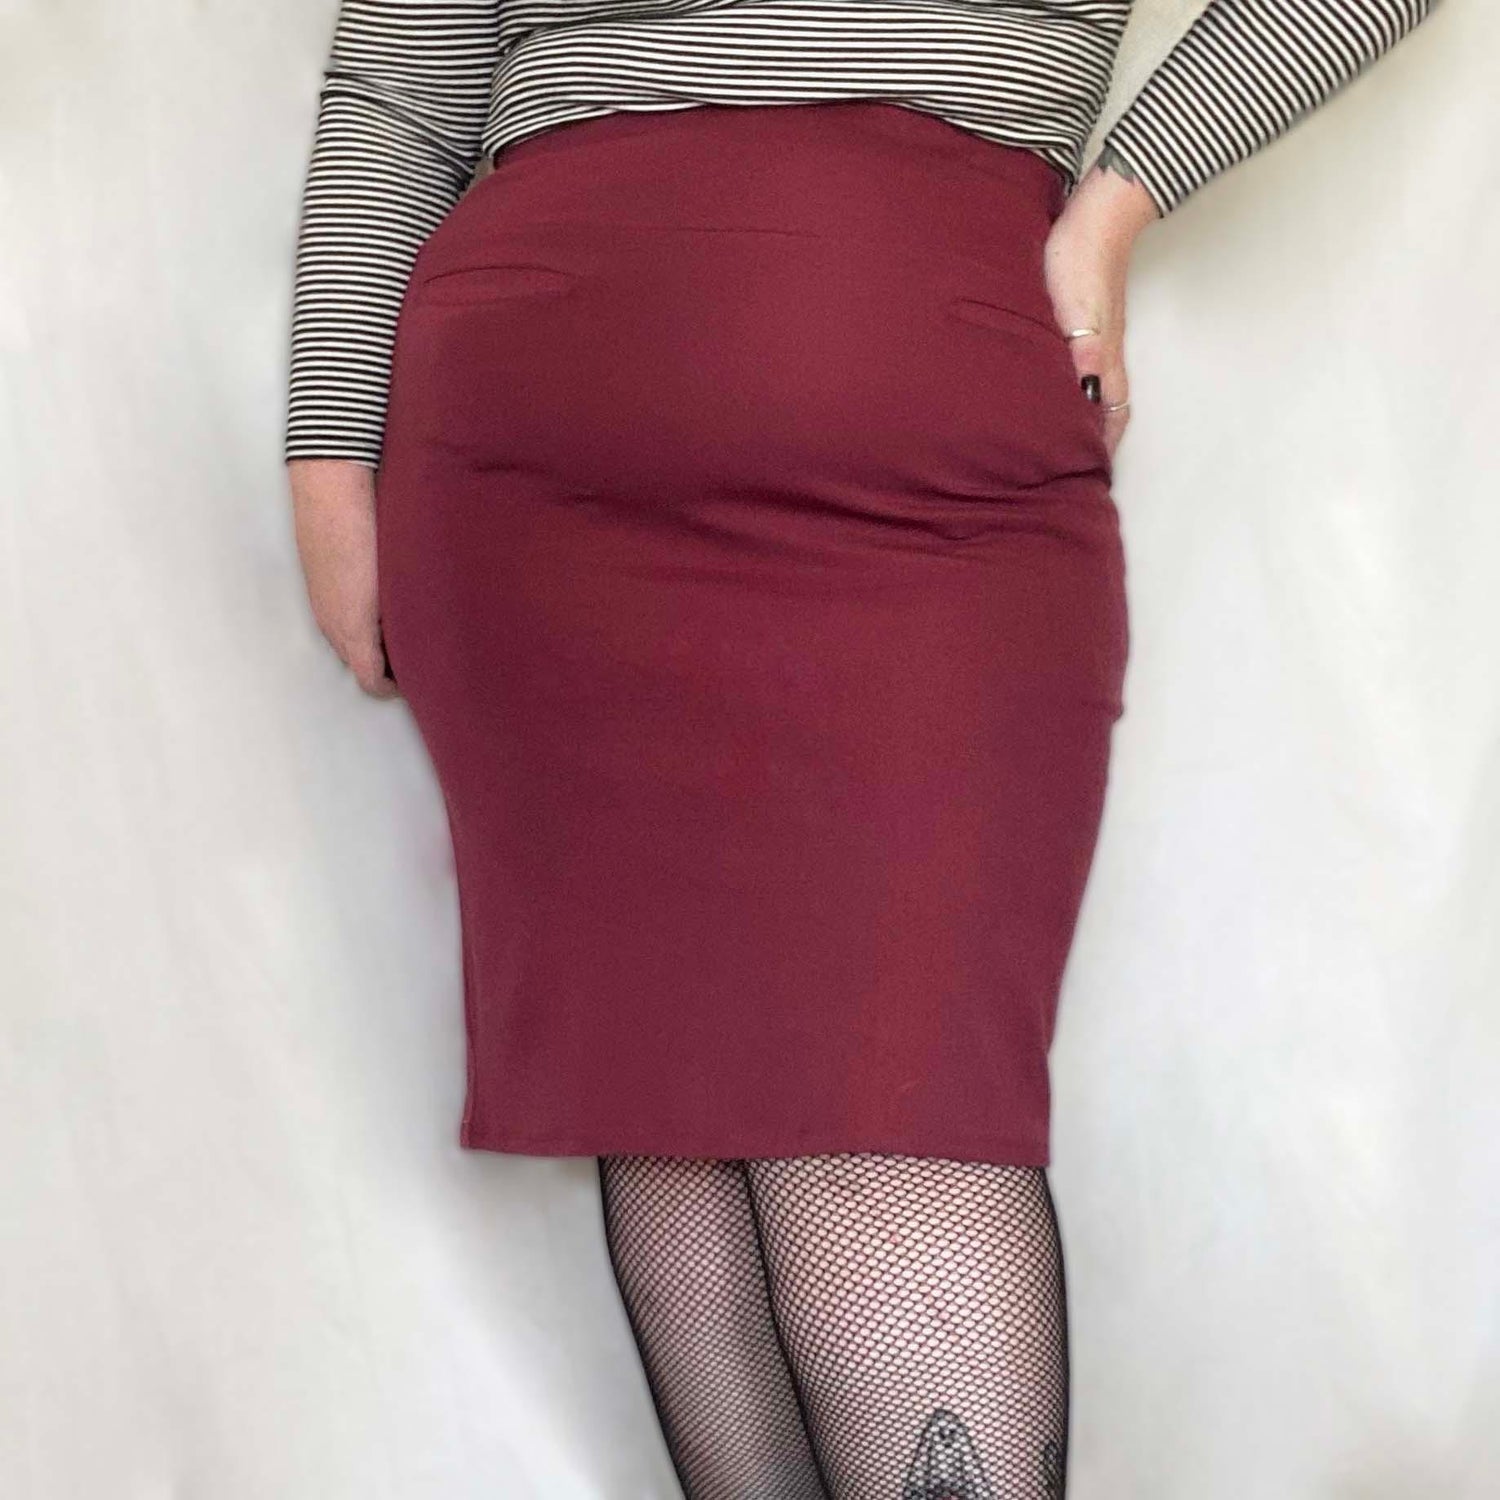 Pencil Skirt - Burgundy